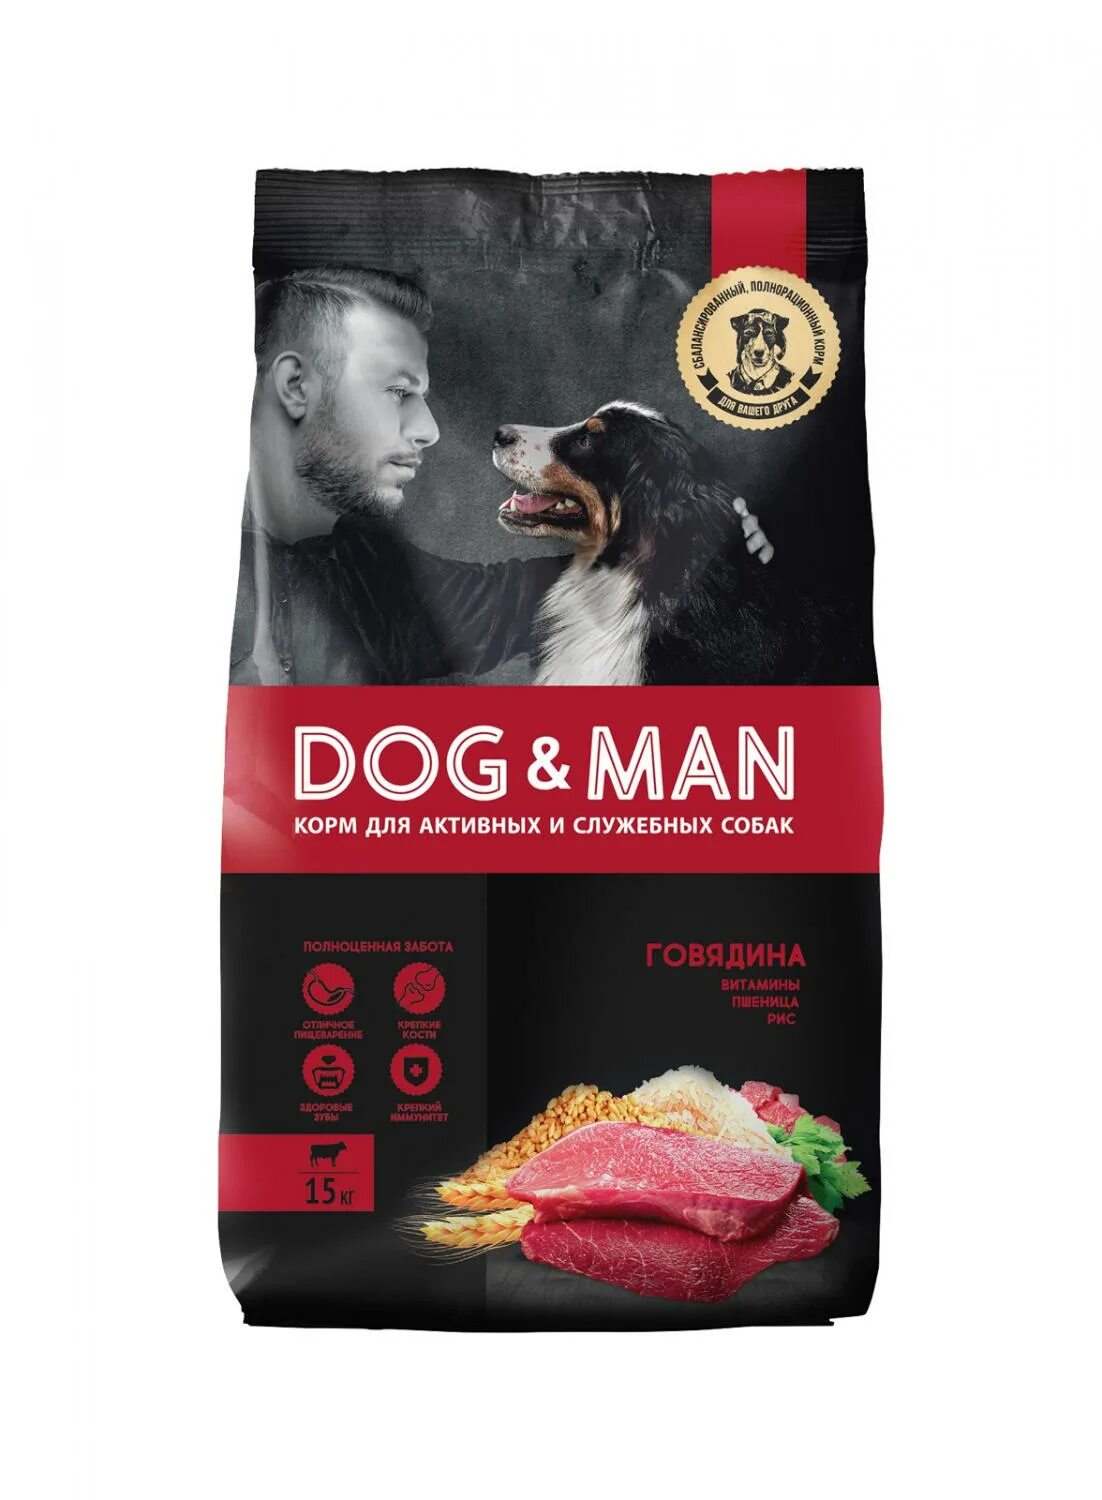 Корм для собак Dog man 2 кг. Сухой корм Догман для собак. Dog man корм для собак 15 кг говядина. Корм для собак Dog man универсальный. Упаковка для сухого корма для собак